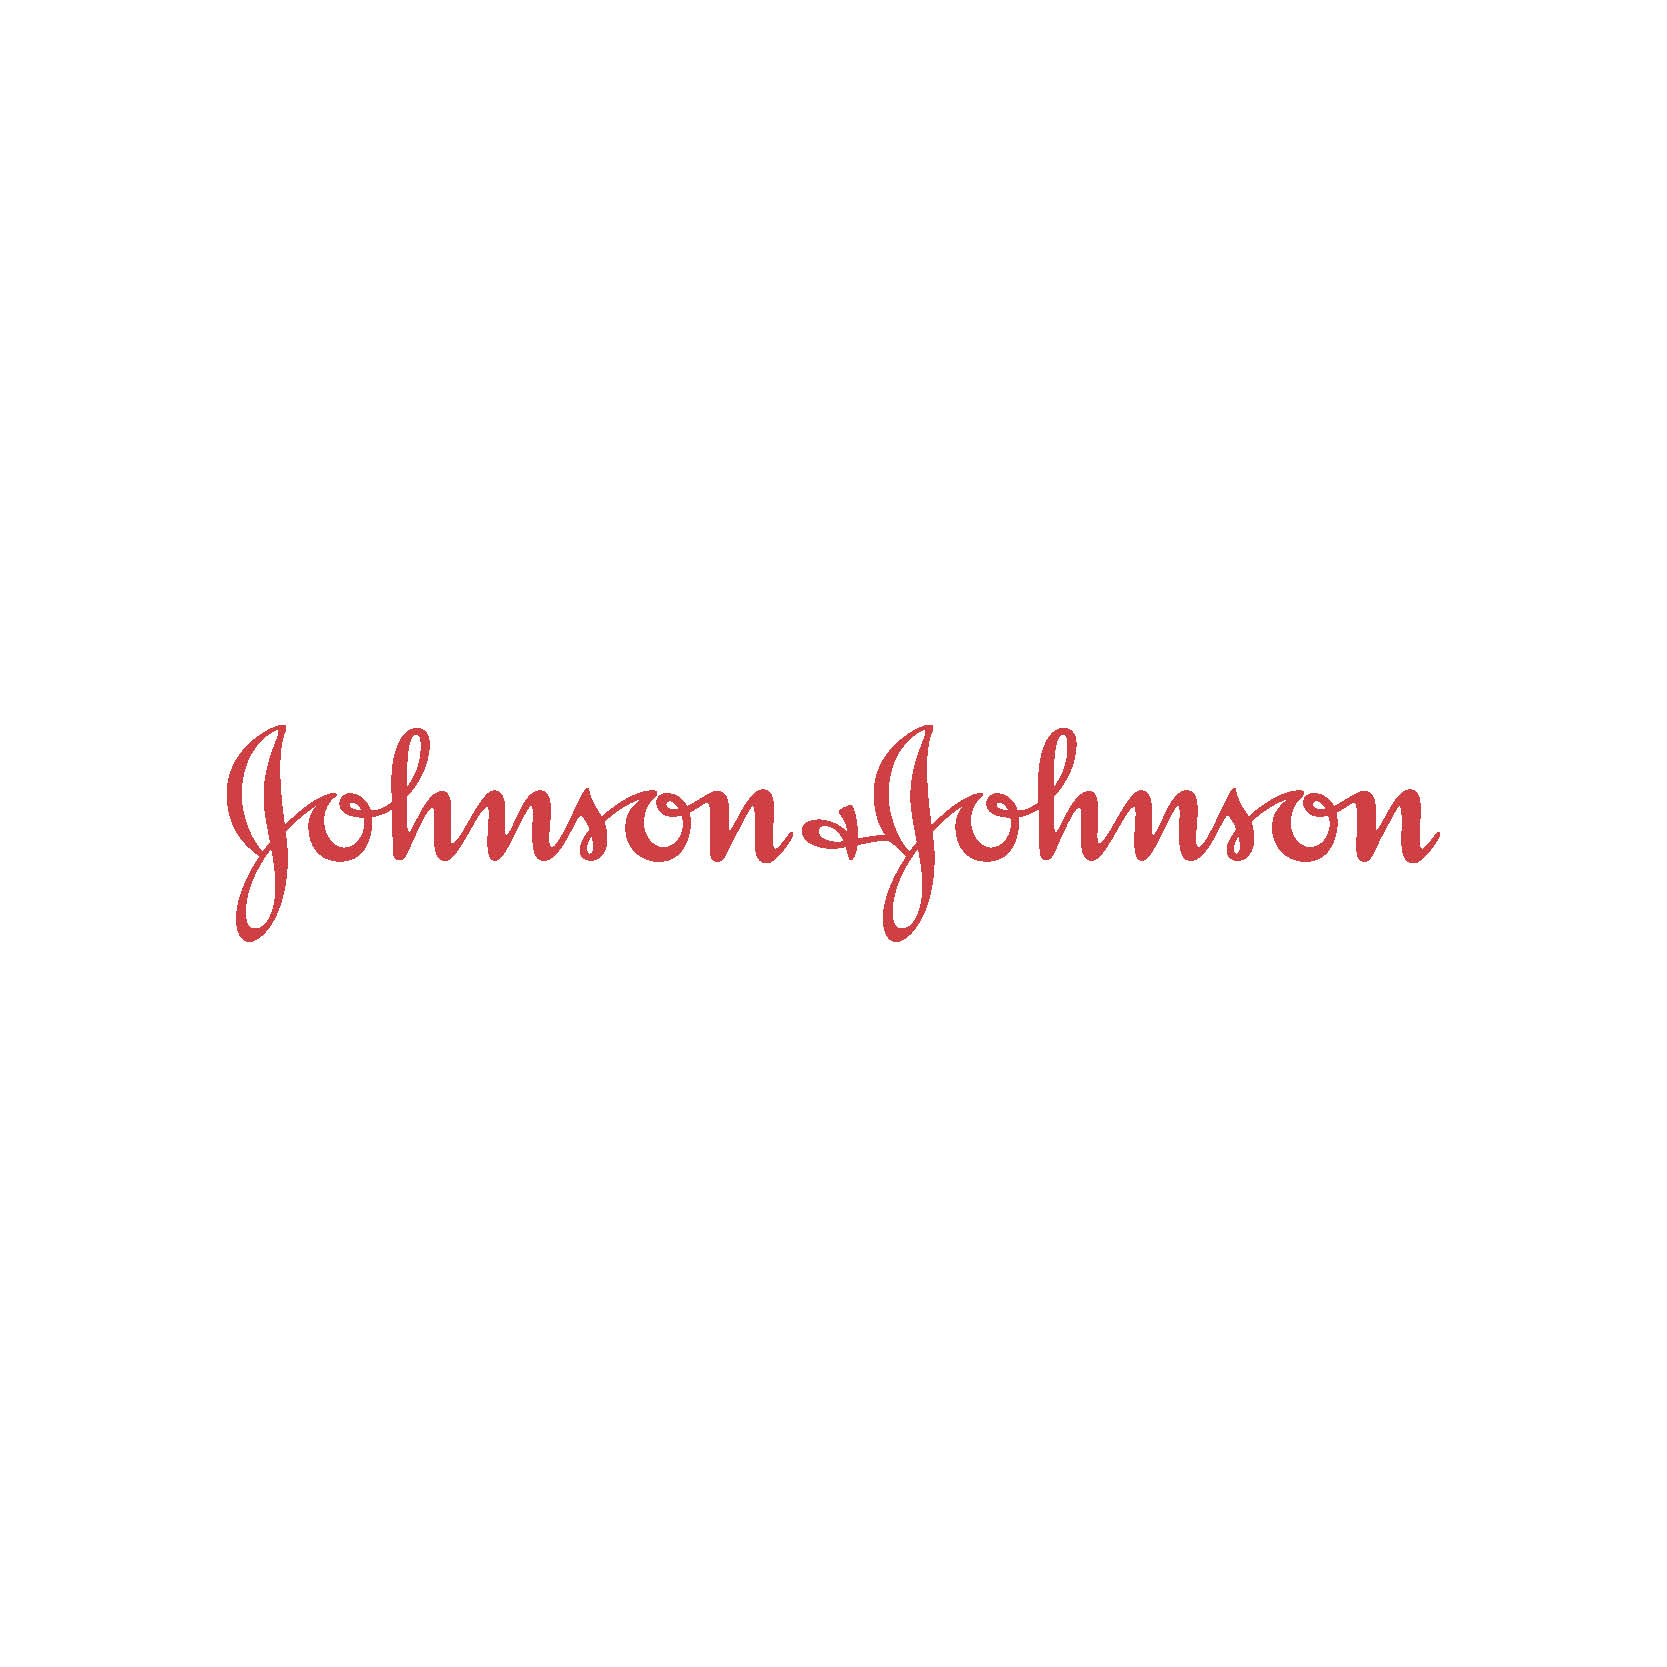 Johnson & Johnson shares